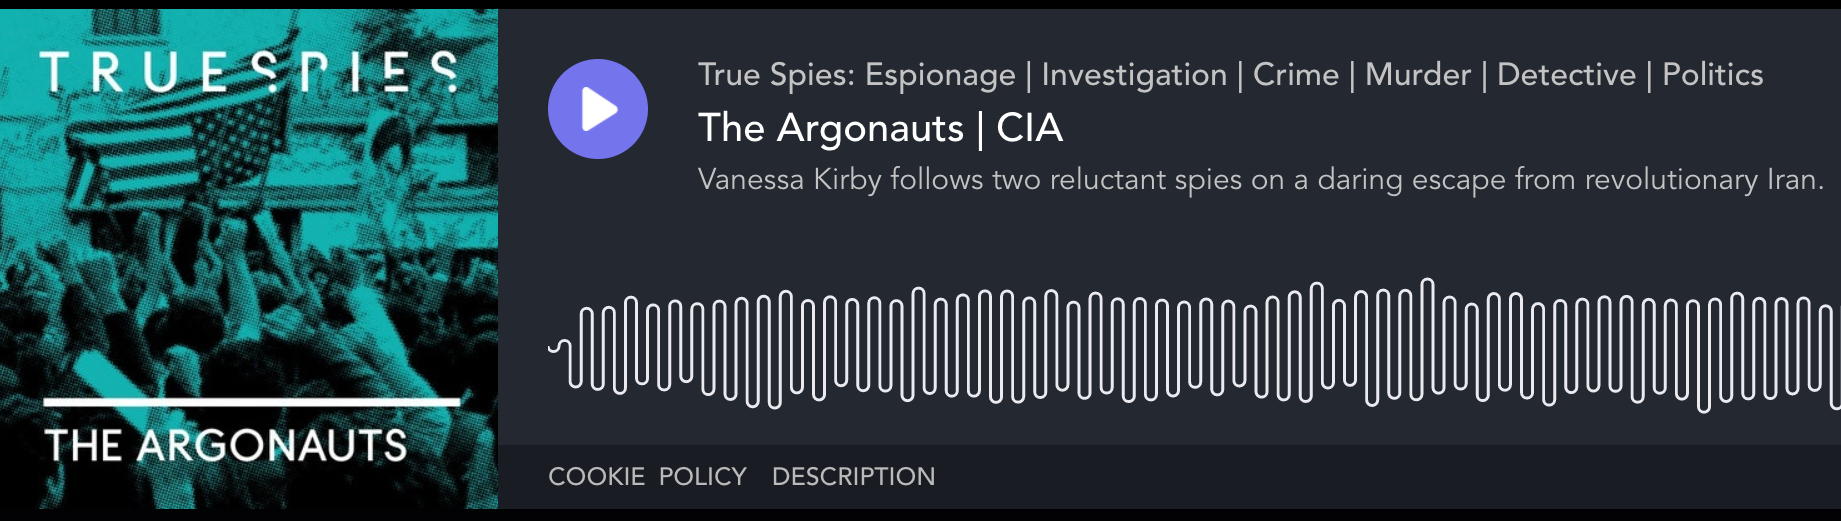 The Argonauts Podcast